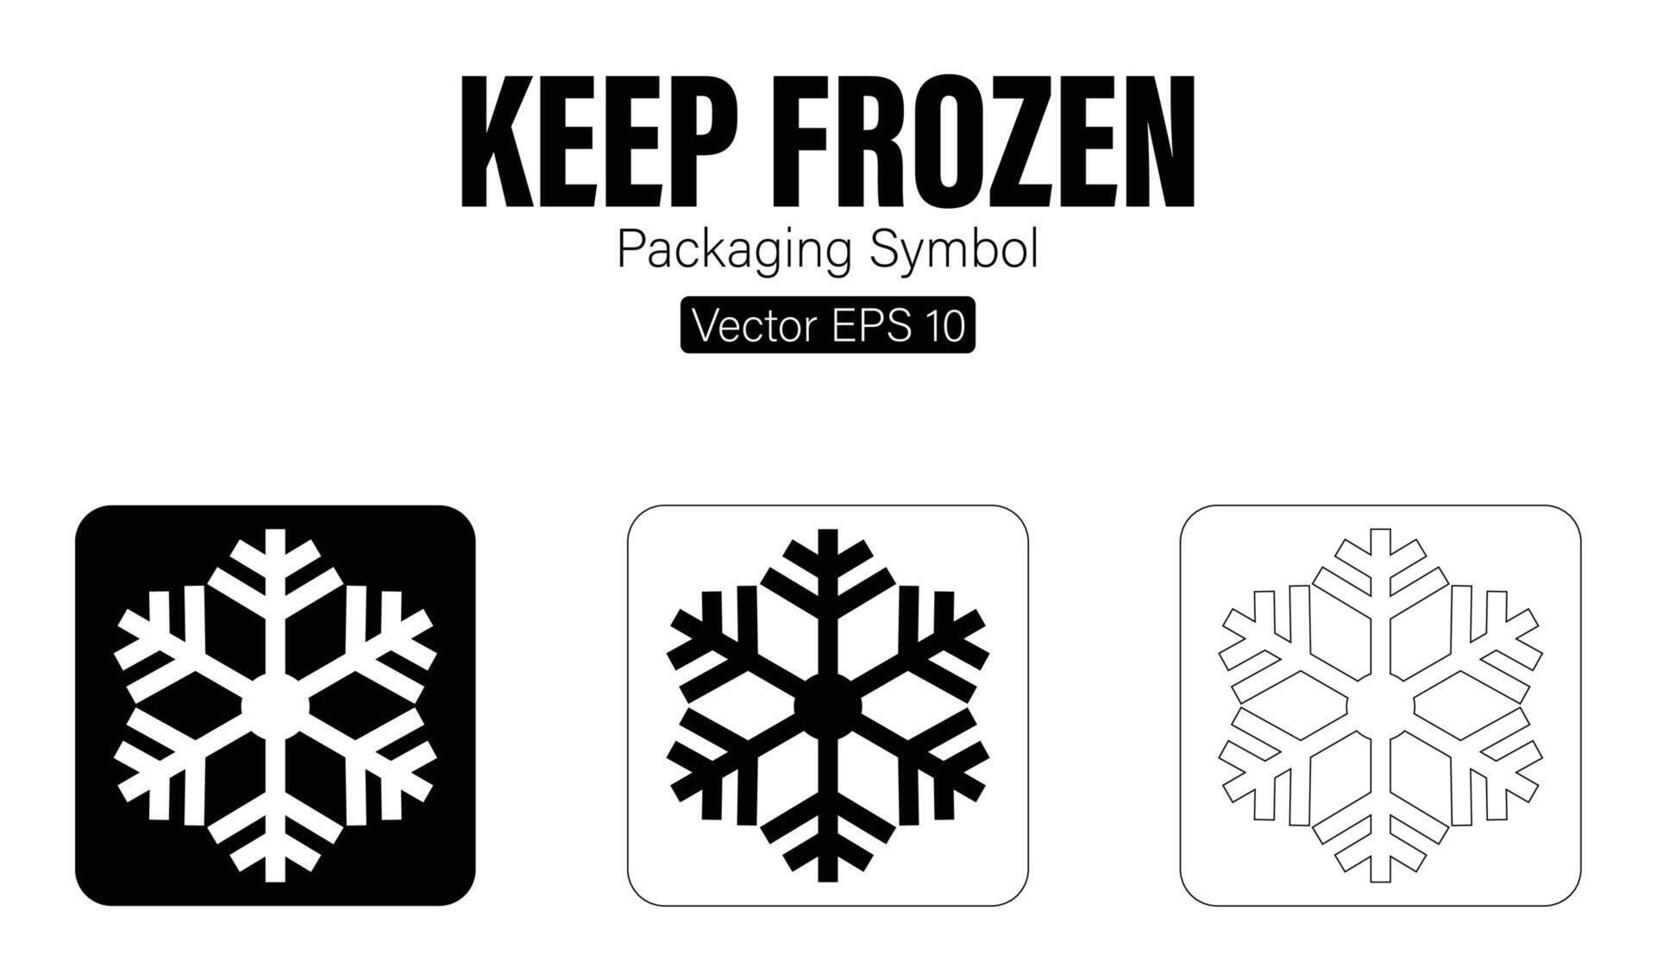 Keep Frozen Packaging Symbol vector